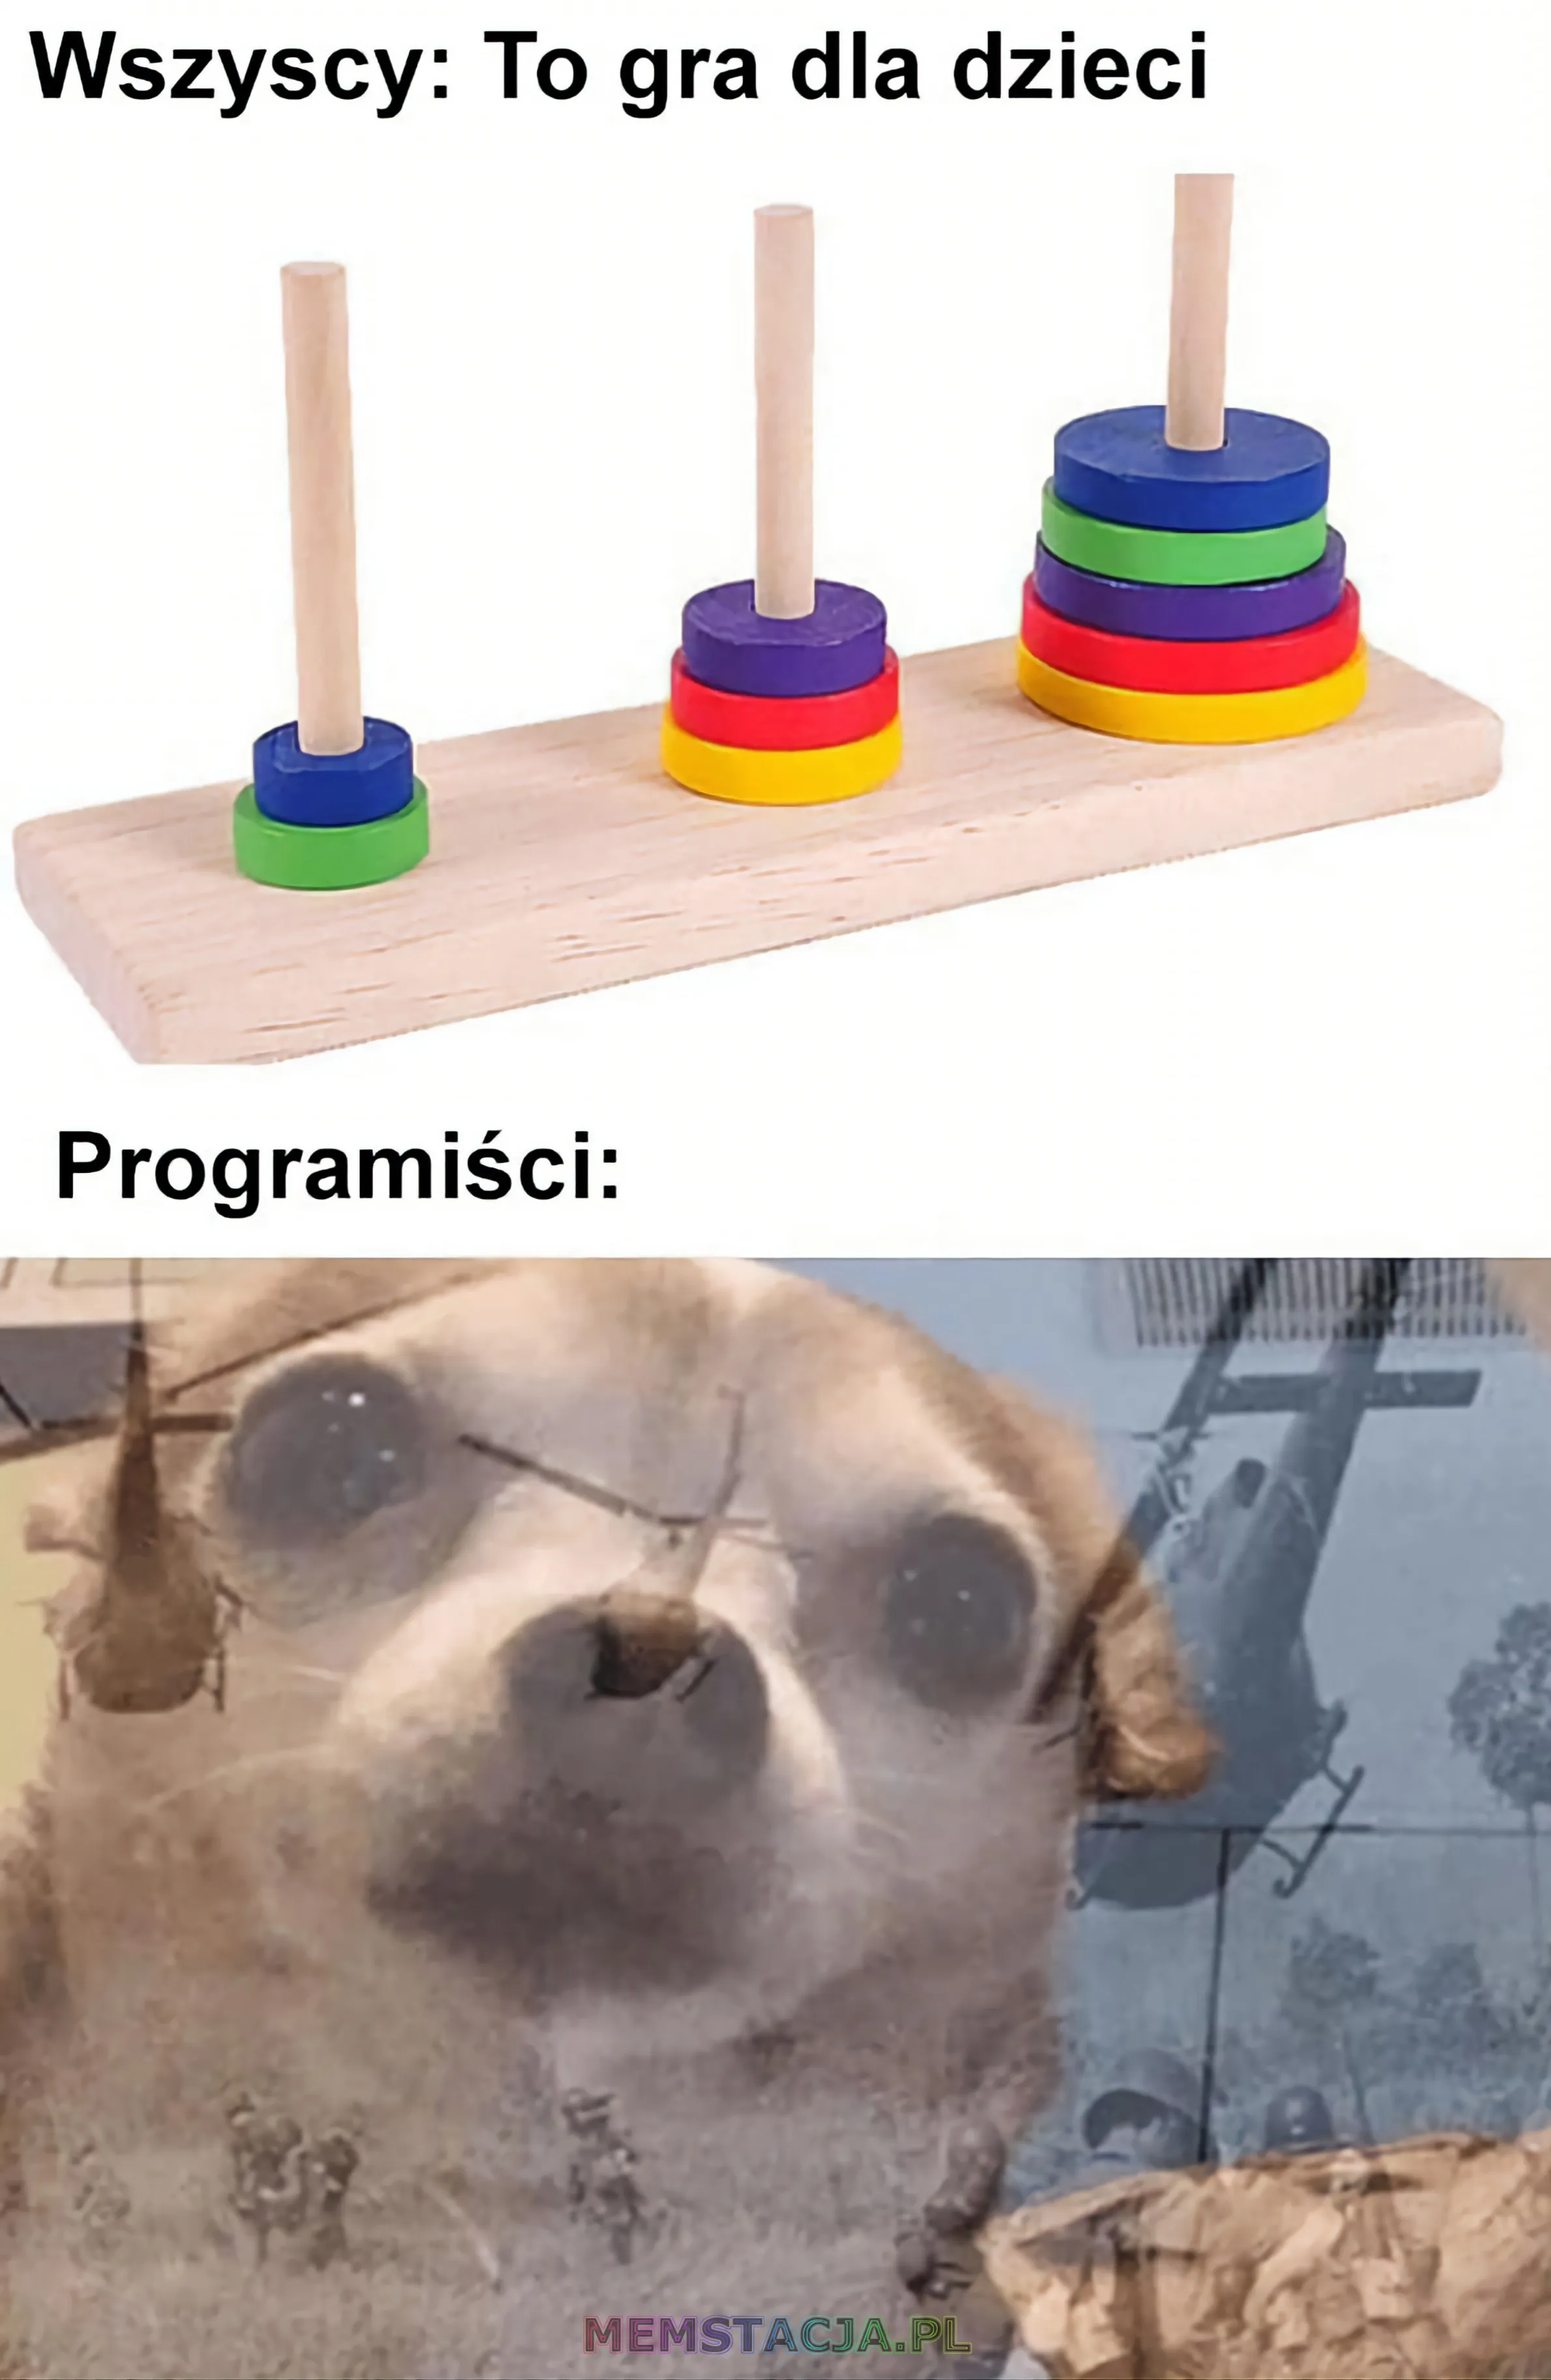 Zdjęcie zabawki dla dzieci - układanie w stos: 'Wszyscy: To gra dla dzieci'; Programiści: 'Zdjęcie psa, emitujące wojenne wspomnienia'